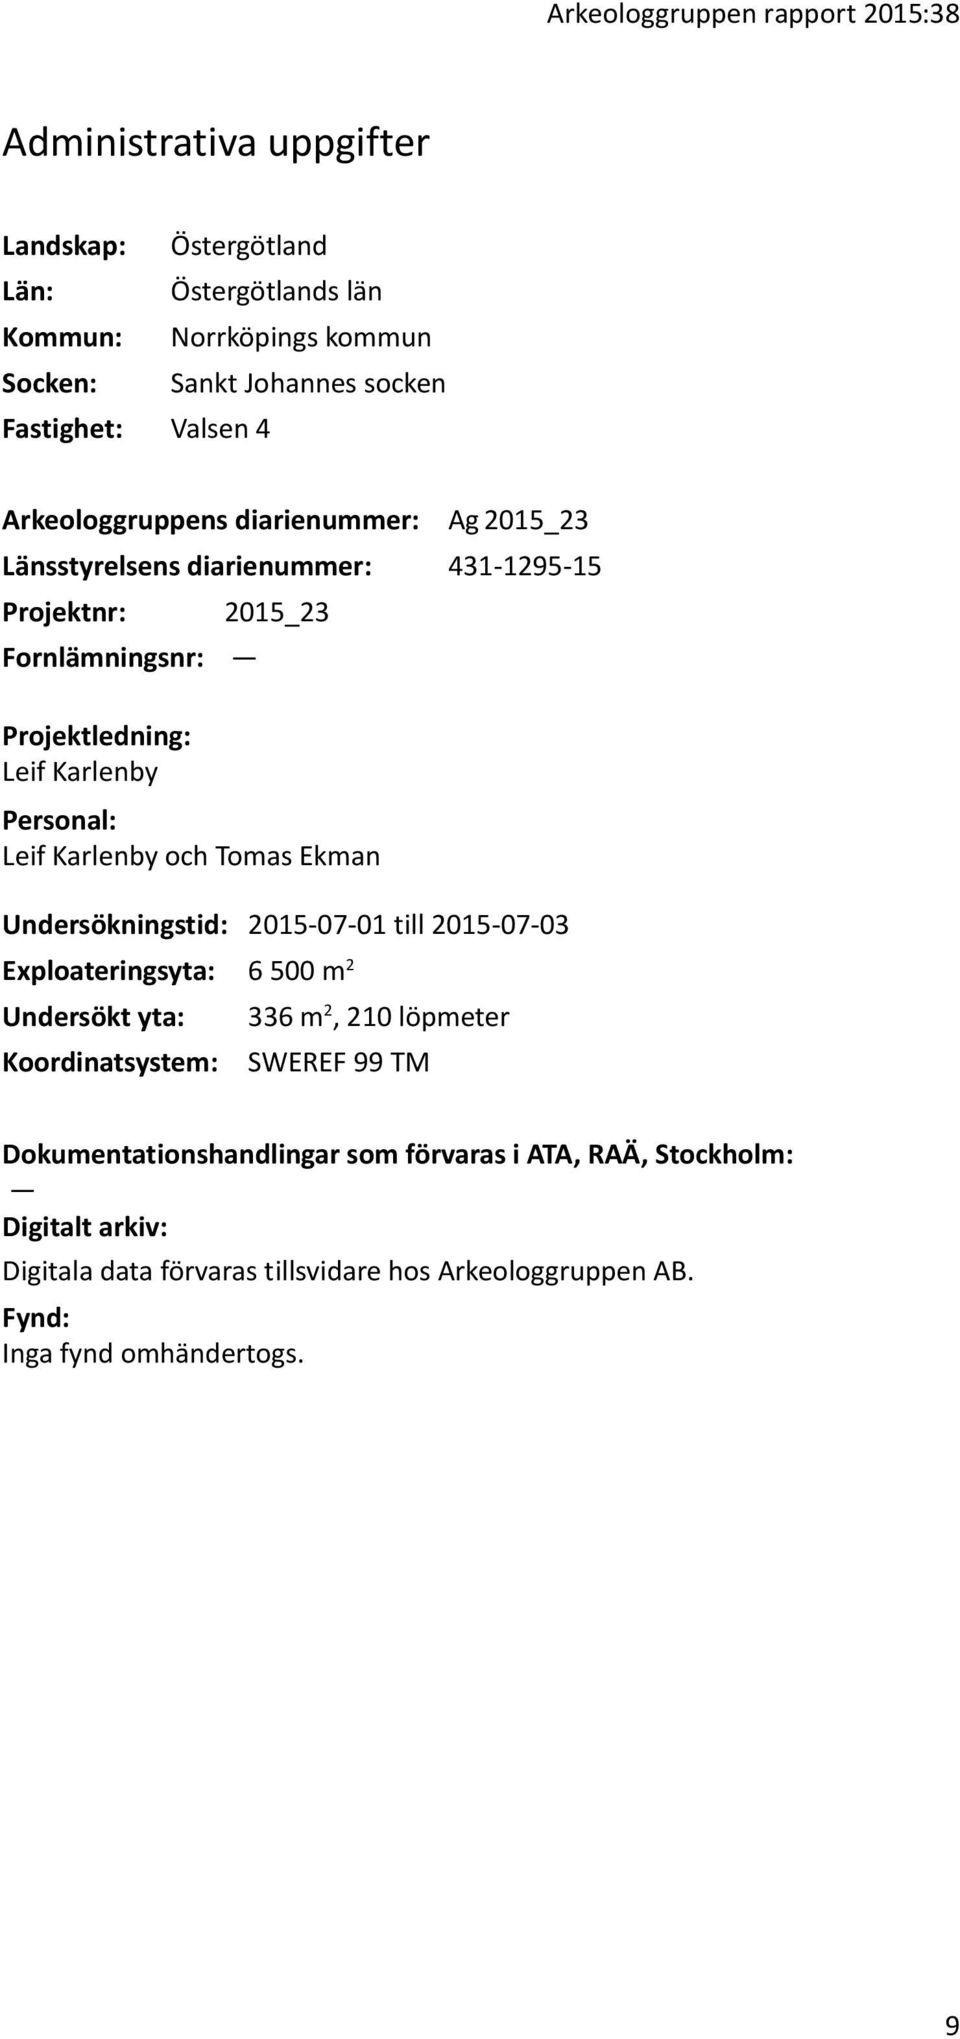 Personal: Leif Karlenby och Tomas Ekman Undersökningstid: 2015-07-01 till 2015-07-03 Exploateringsyta: 6 500 m 2 Undersökt yta: 336 m 2, 210 löpmeter Koordinatsystem: